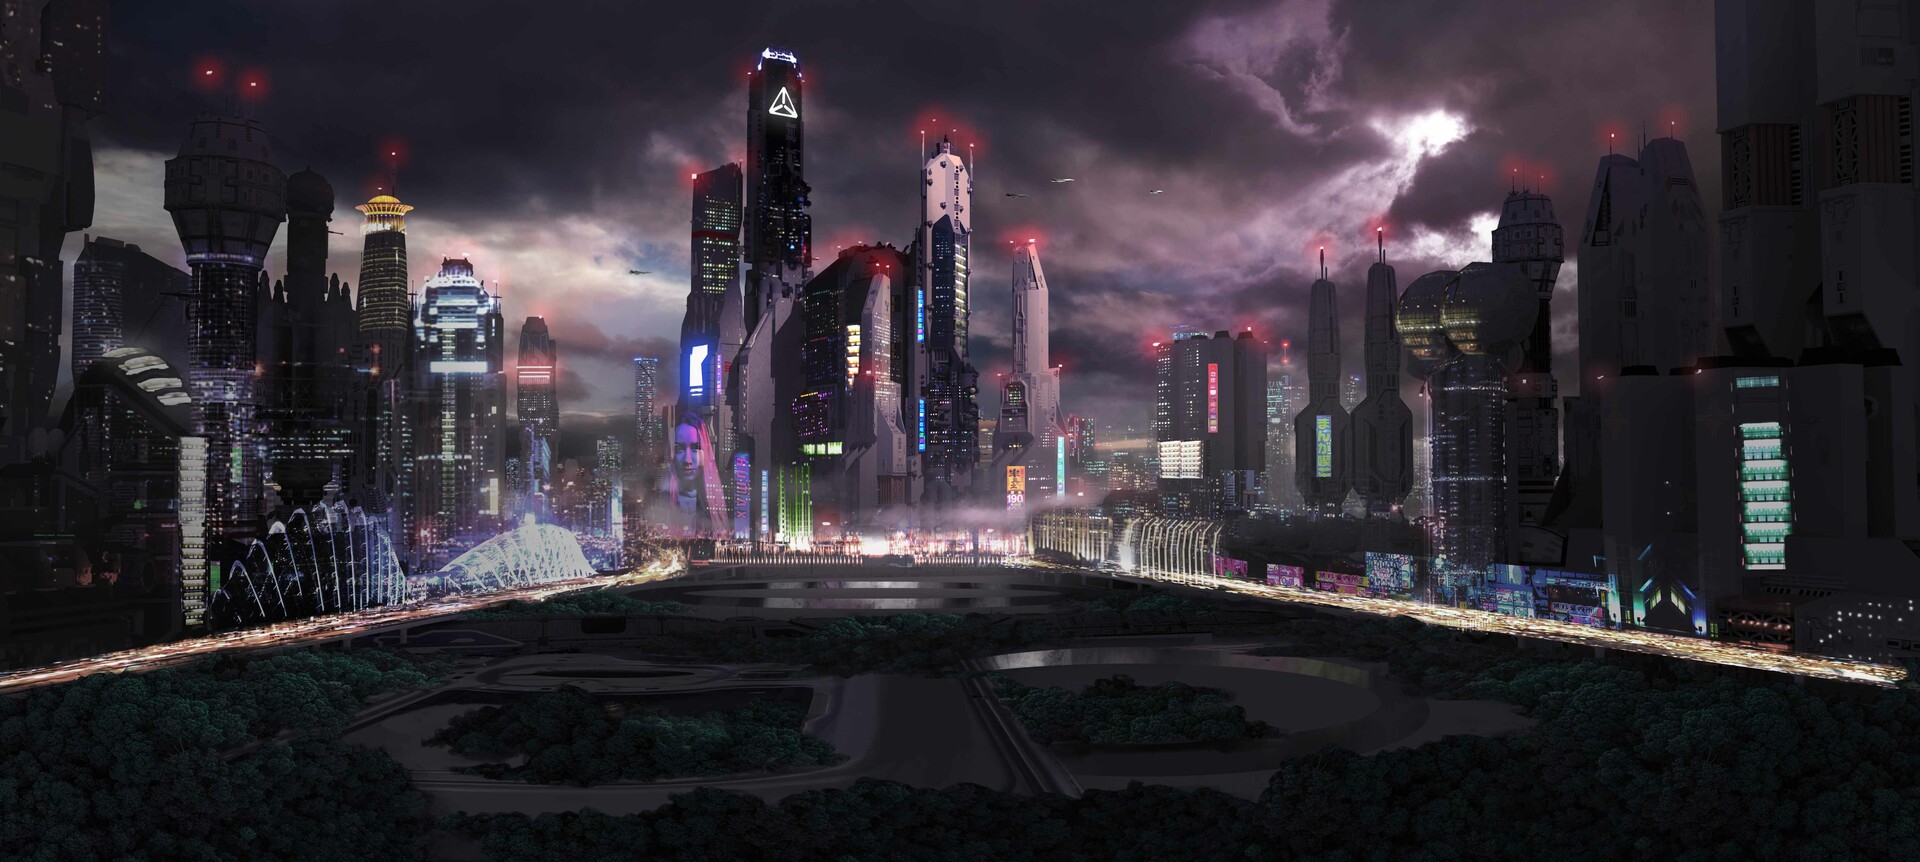 Sci Fi City Art by Alfven Ato